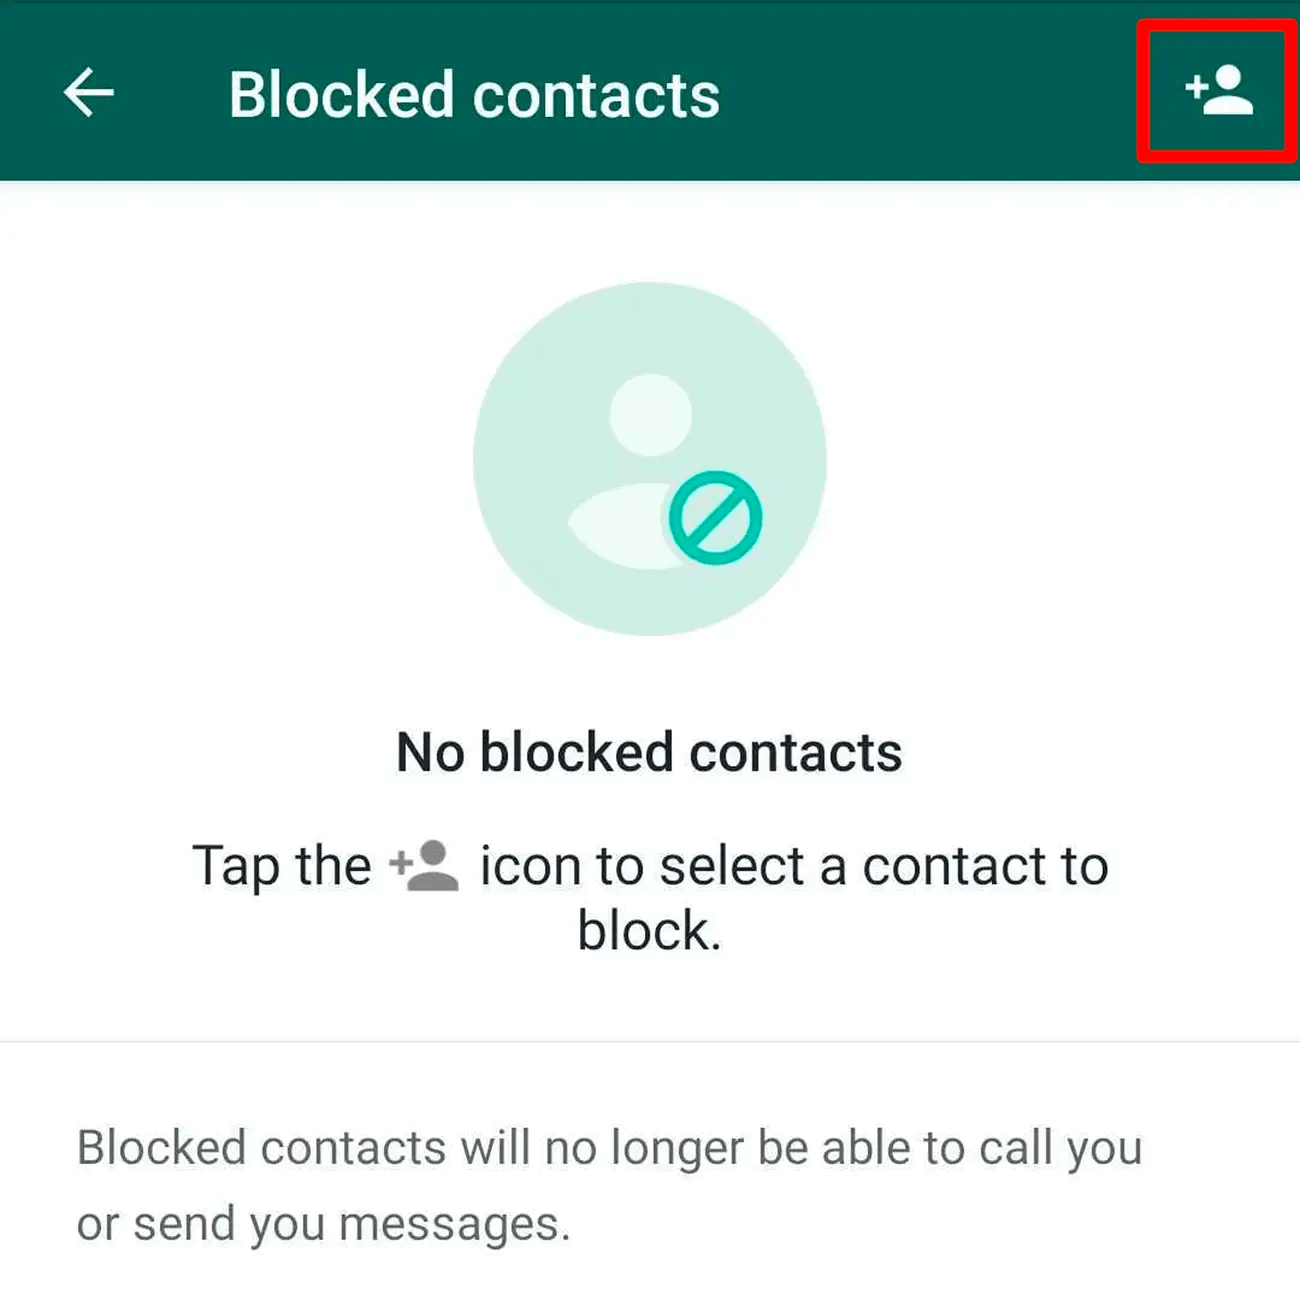 Bloccare su WhatsApp